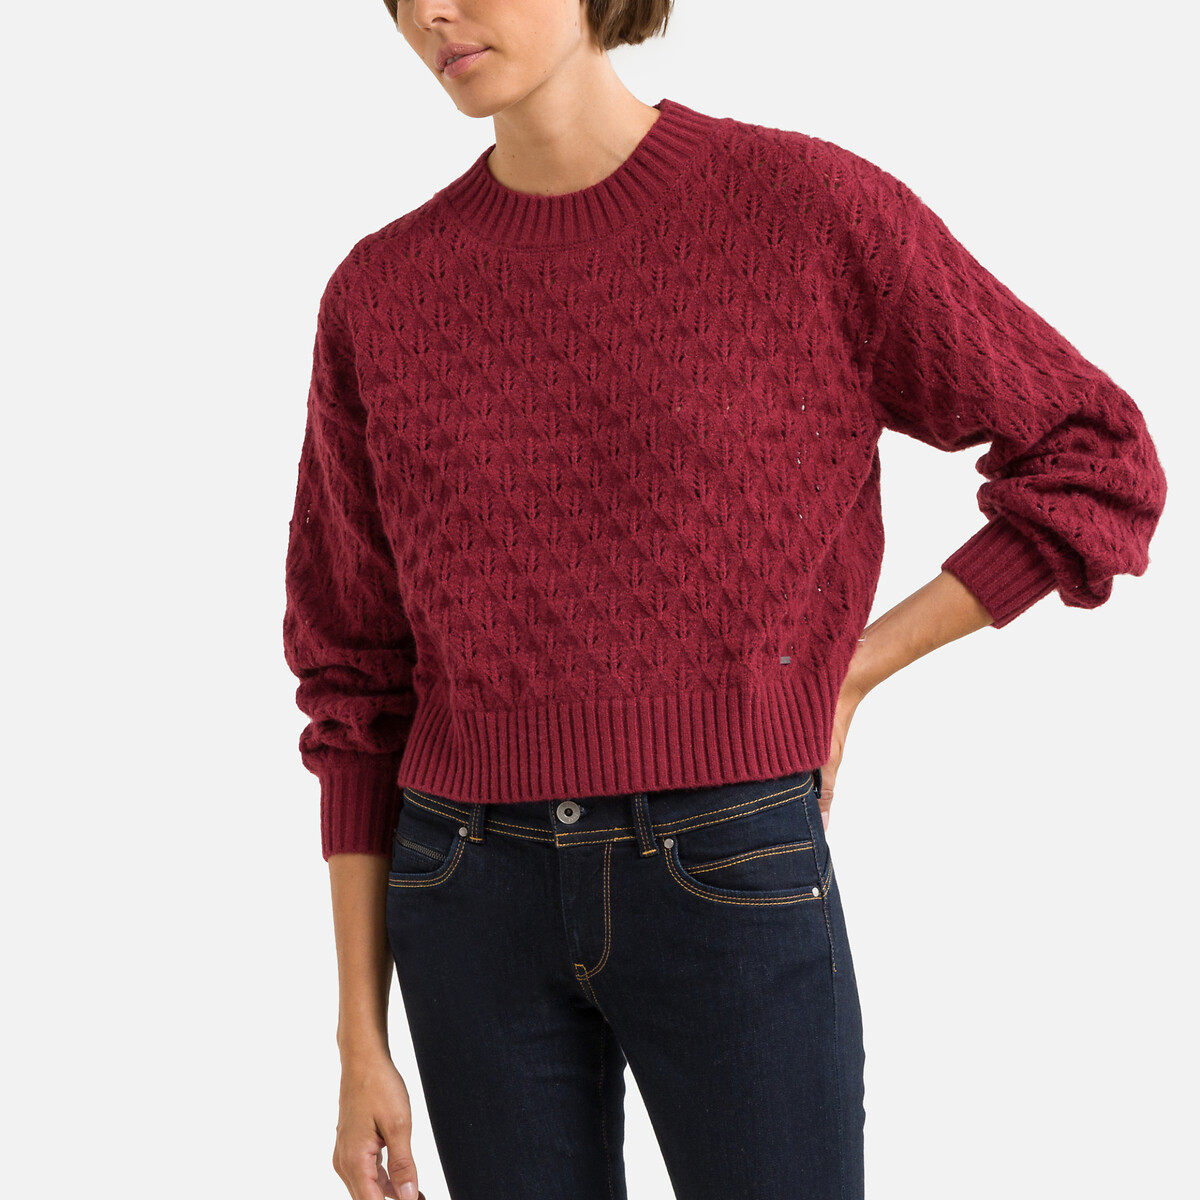 Пуловер Из ажурного трикотажа XL красный